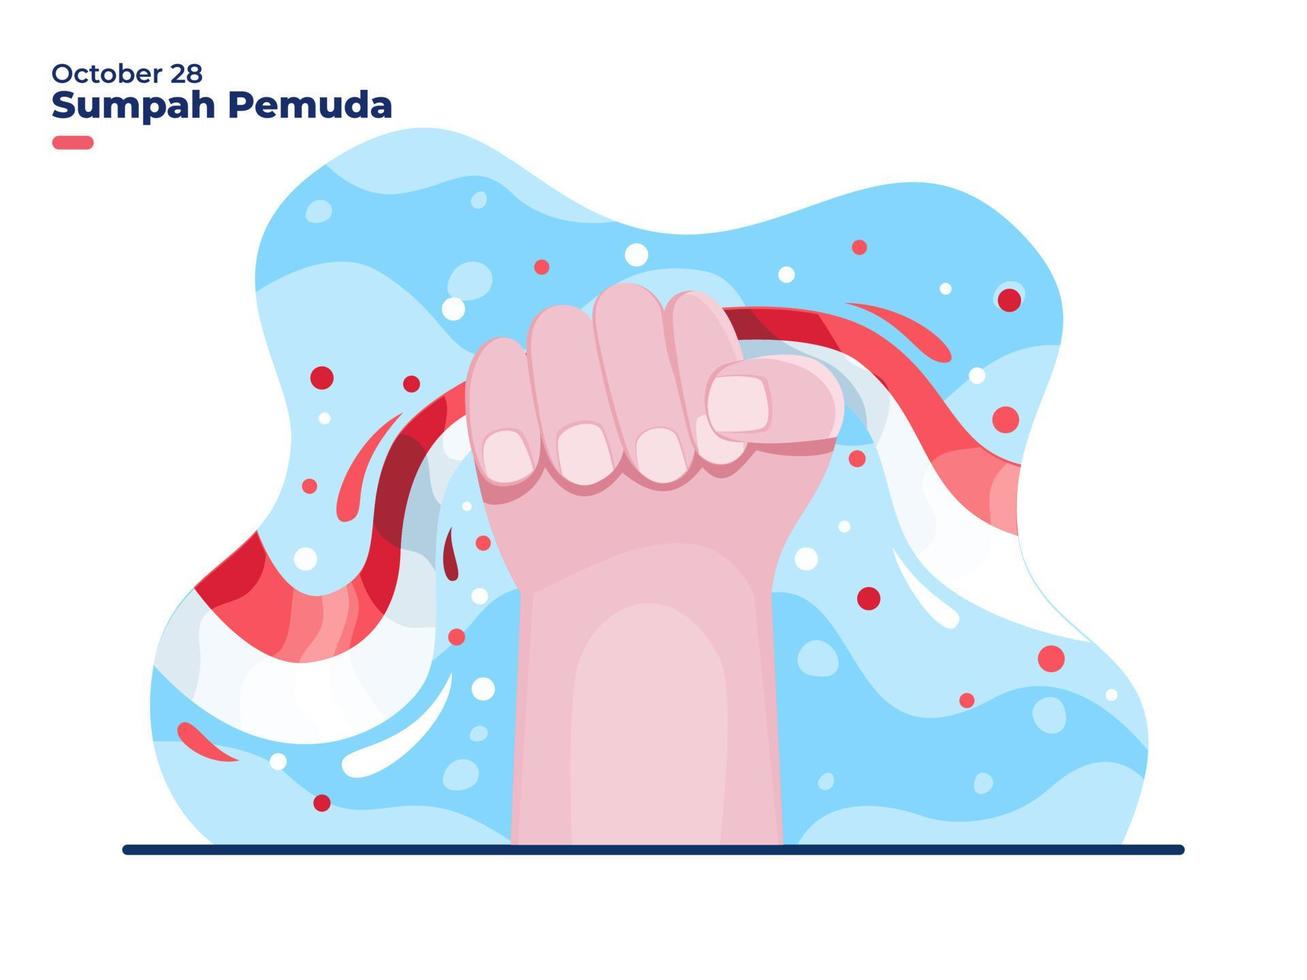 28 de outubro sumpah pemuda, ilustração do dia do juramento da juventude indonésia média com a mão segurando a bandeira nacional da Indonésia. pode ser usado para cartão de felicitações, convite, cartaz, web, mídia social de cartão postal. vetor